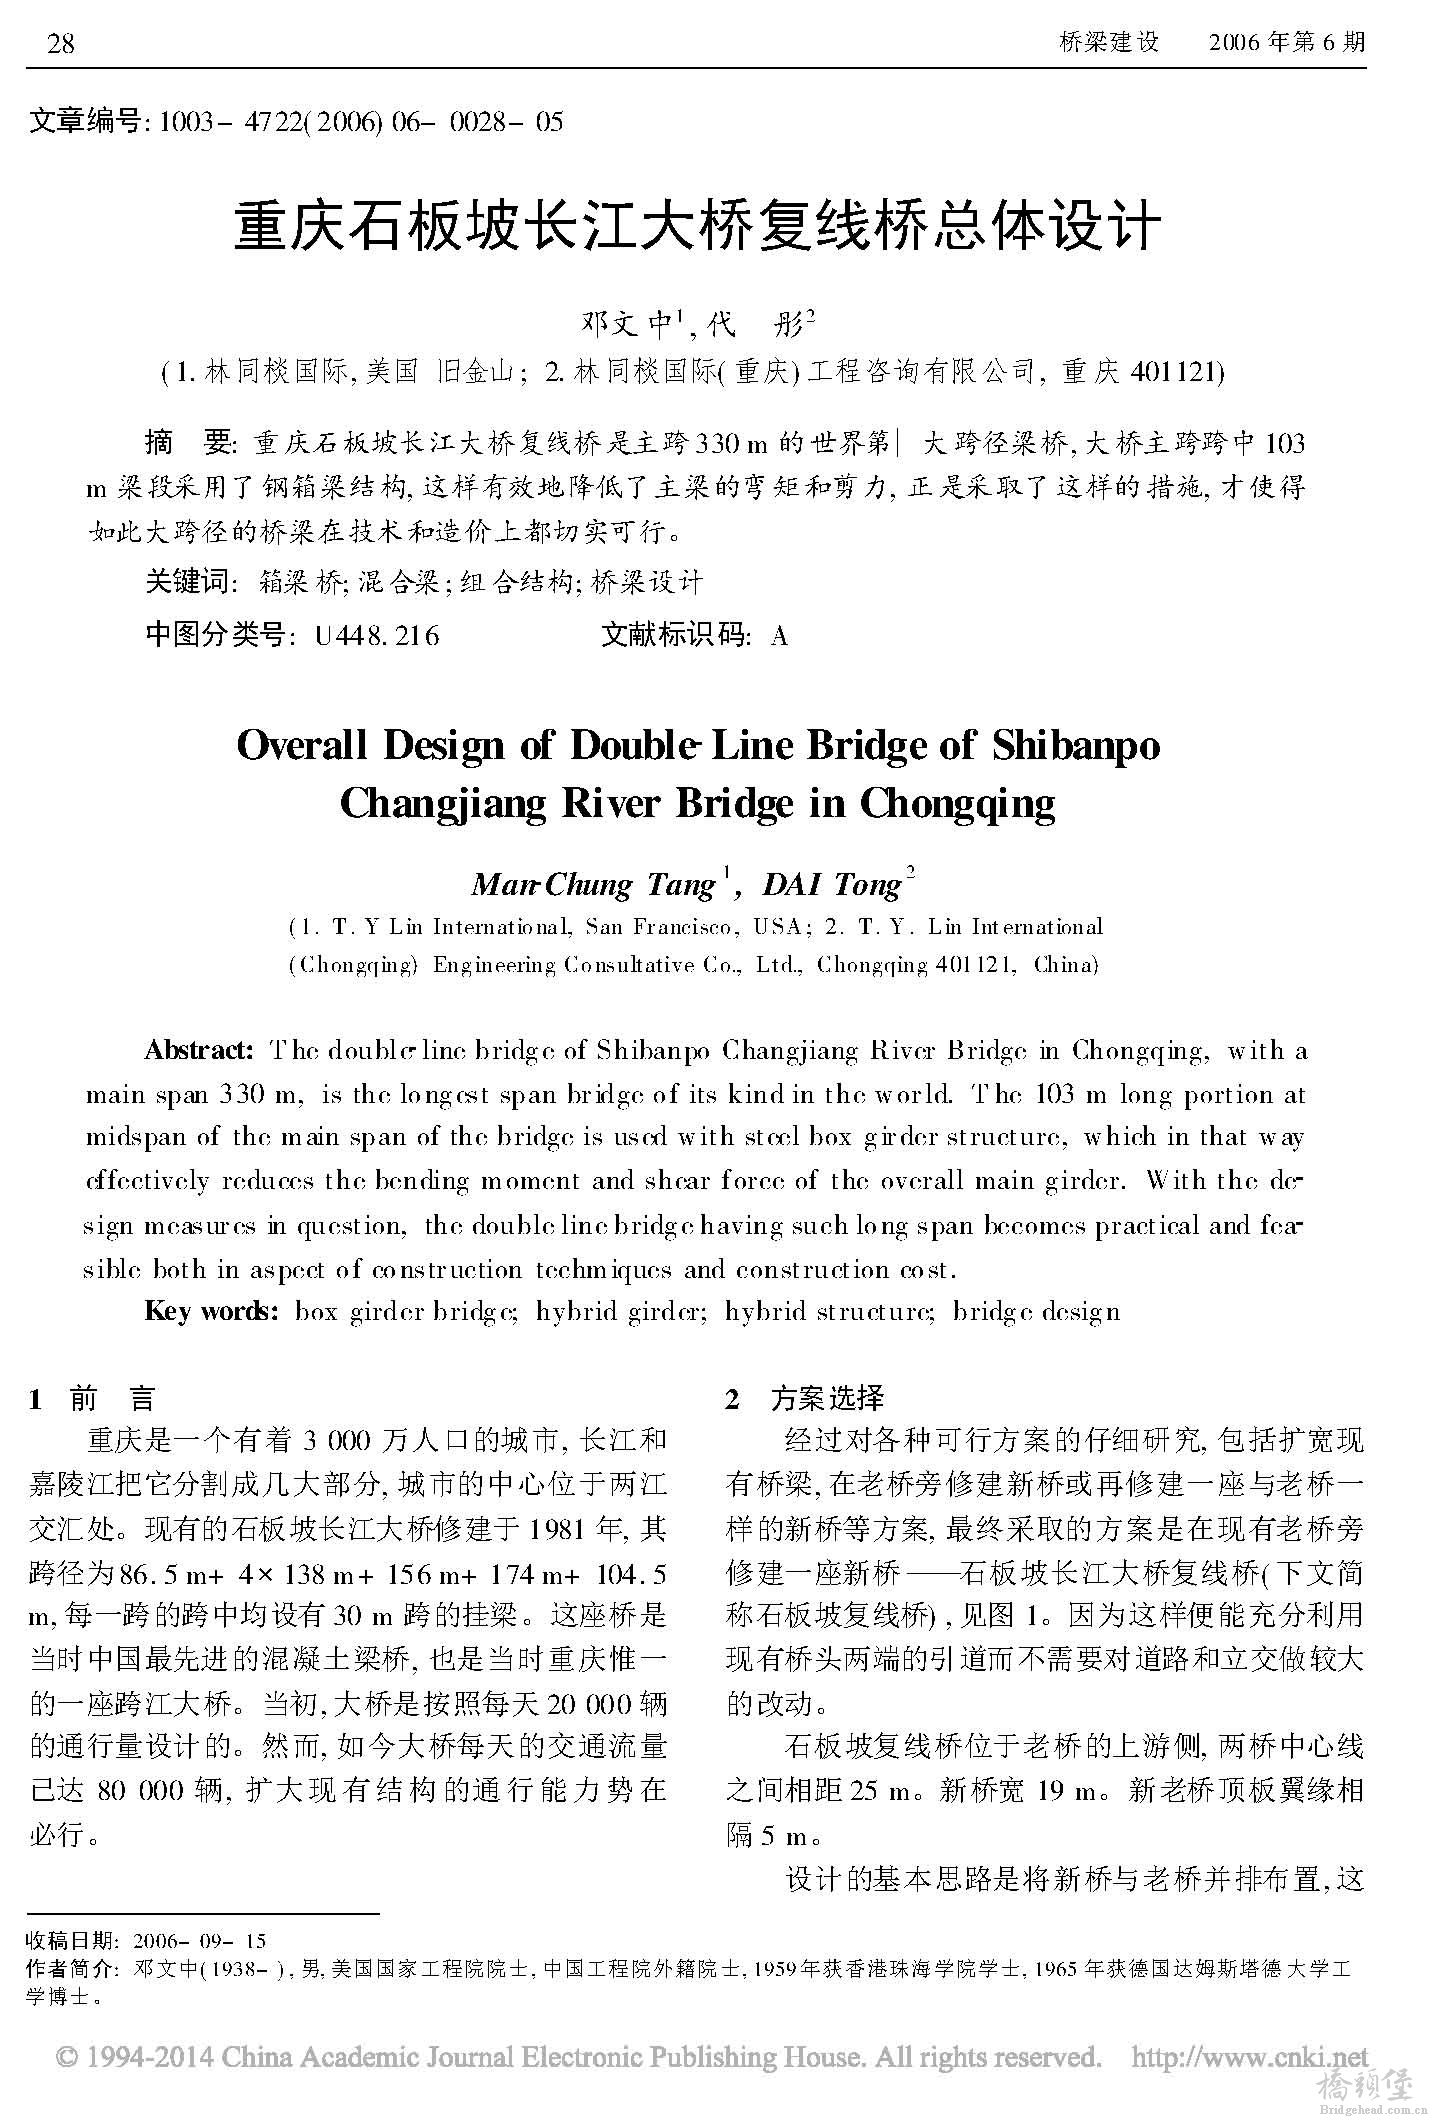 重庆石板坡长江大桥复线桥总体设计_页面_1.jpg